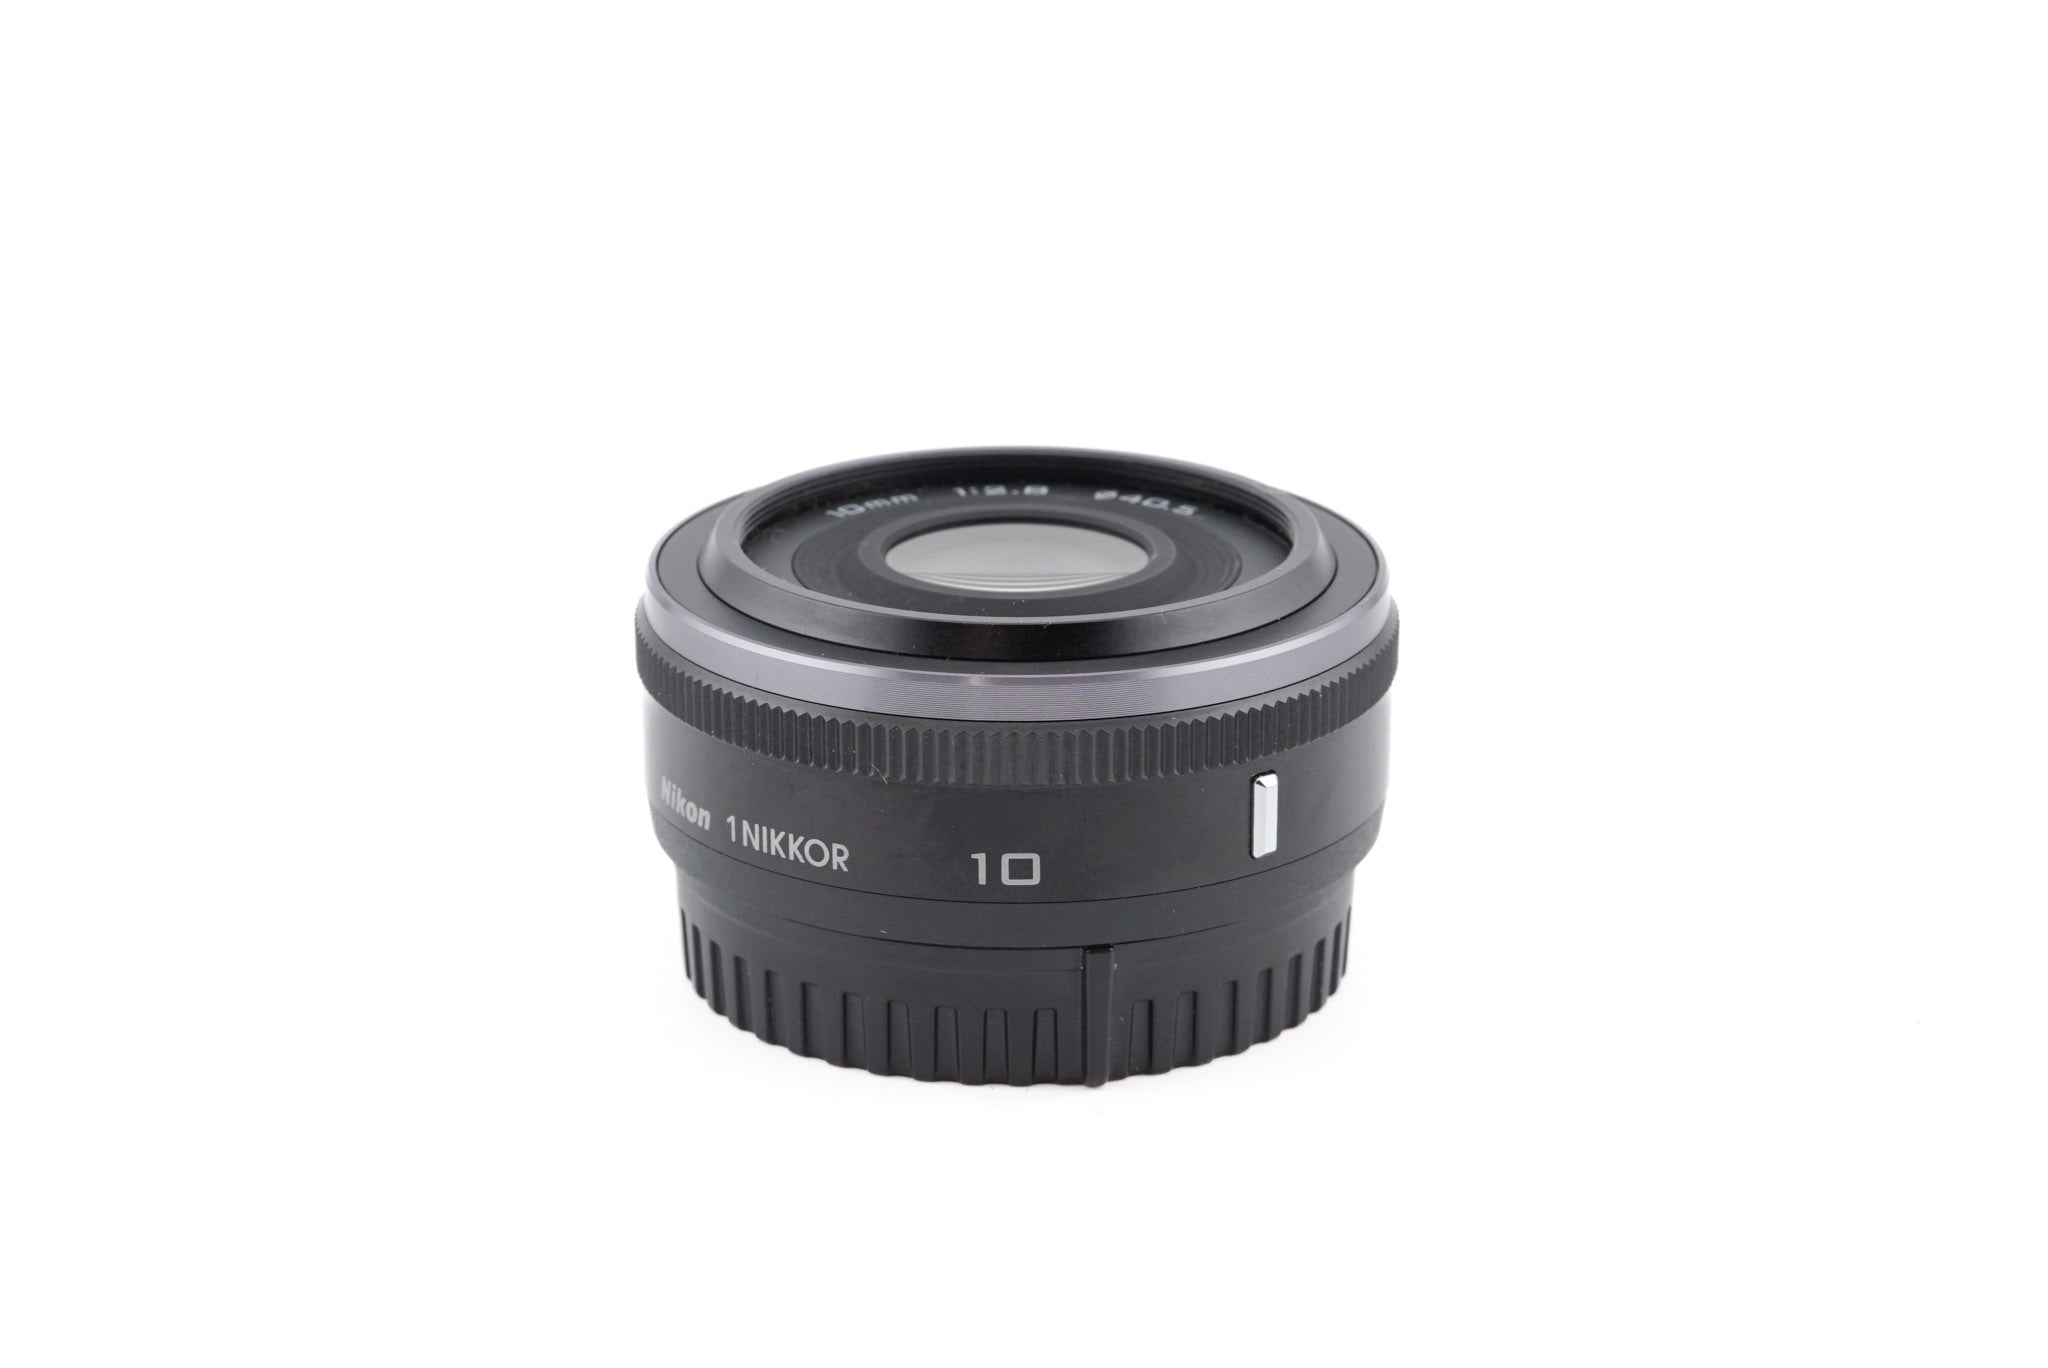 Nikon 10mm f2.8 Nikkor 1 - Lens